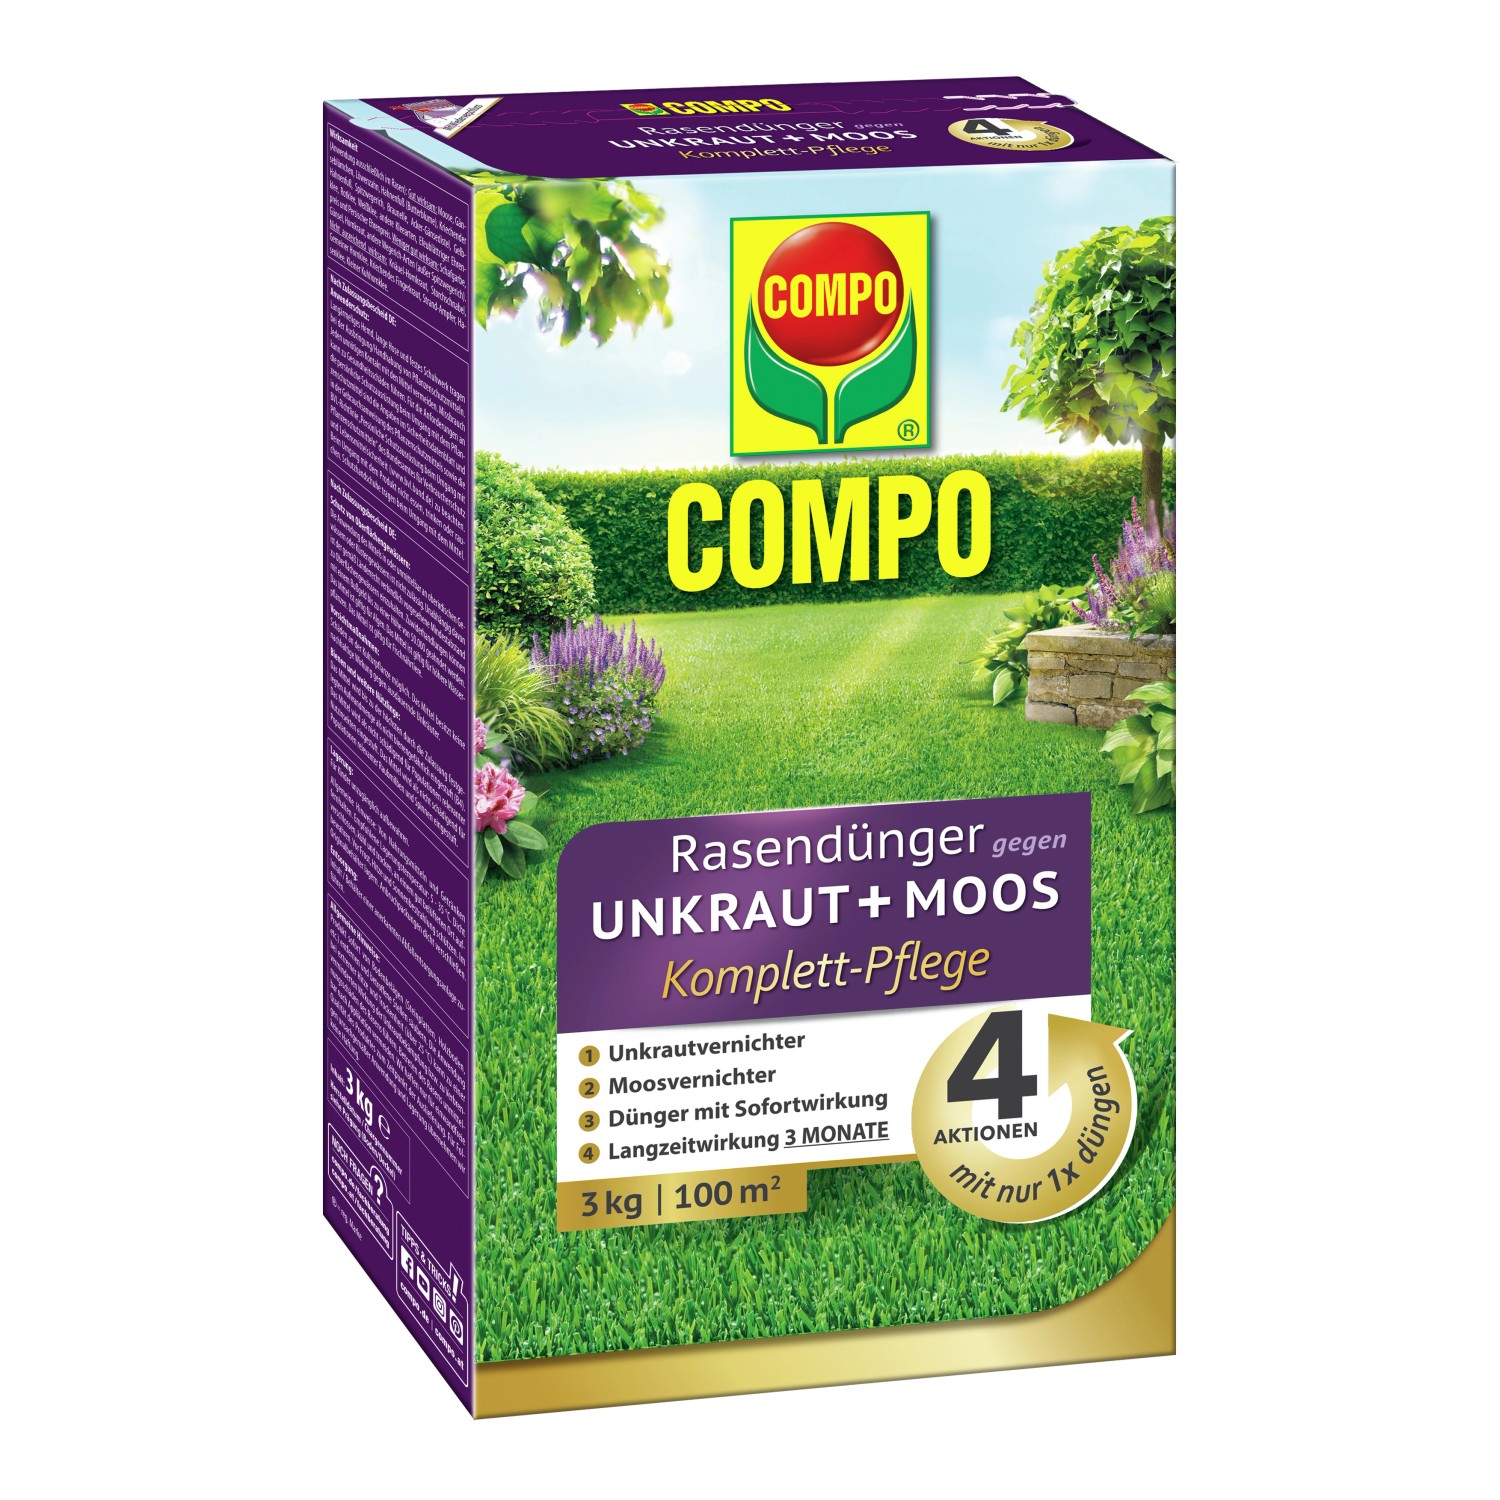 Compo Rasendünger gegen Unkraut+Moos 4in1 Komplett-Pflege 3 kg für 100 m² von Compo